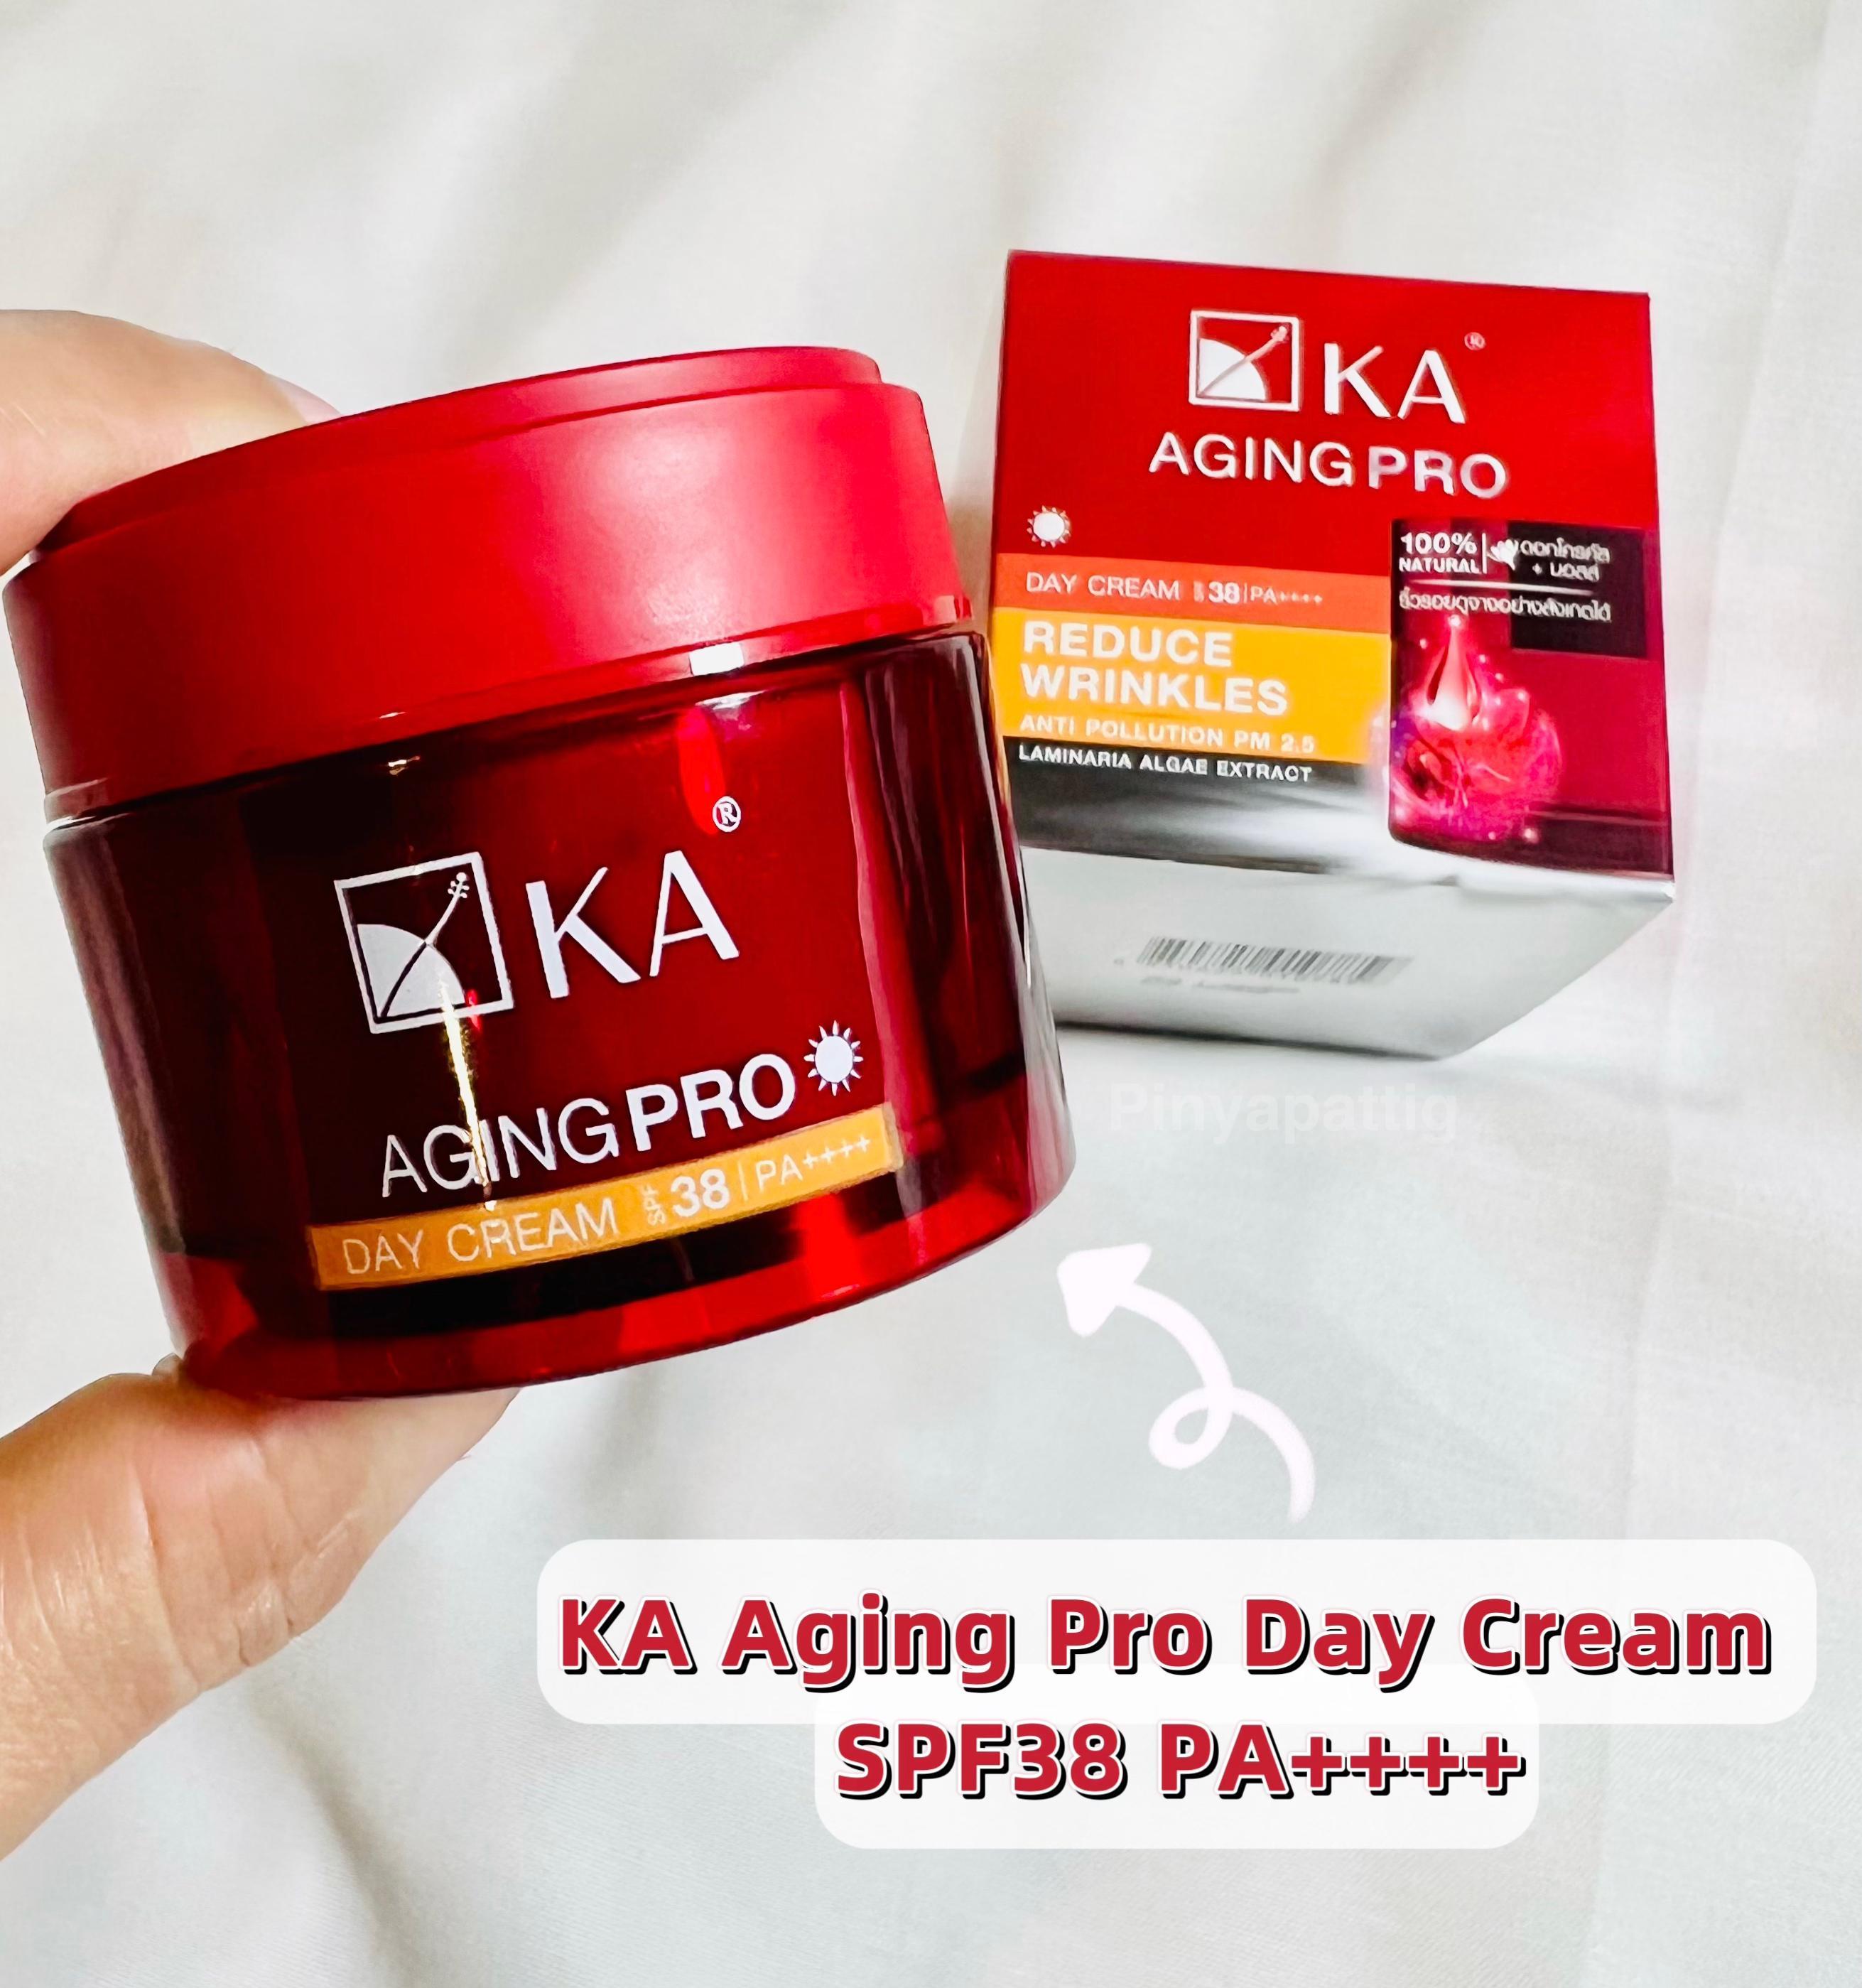 ภาพหน้าปก KA Aging Pro Day Cream & Night Treatment ช่วยผิวกระชับขึ้นจริง ที่:1